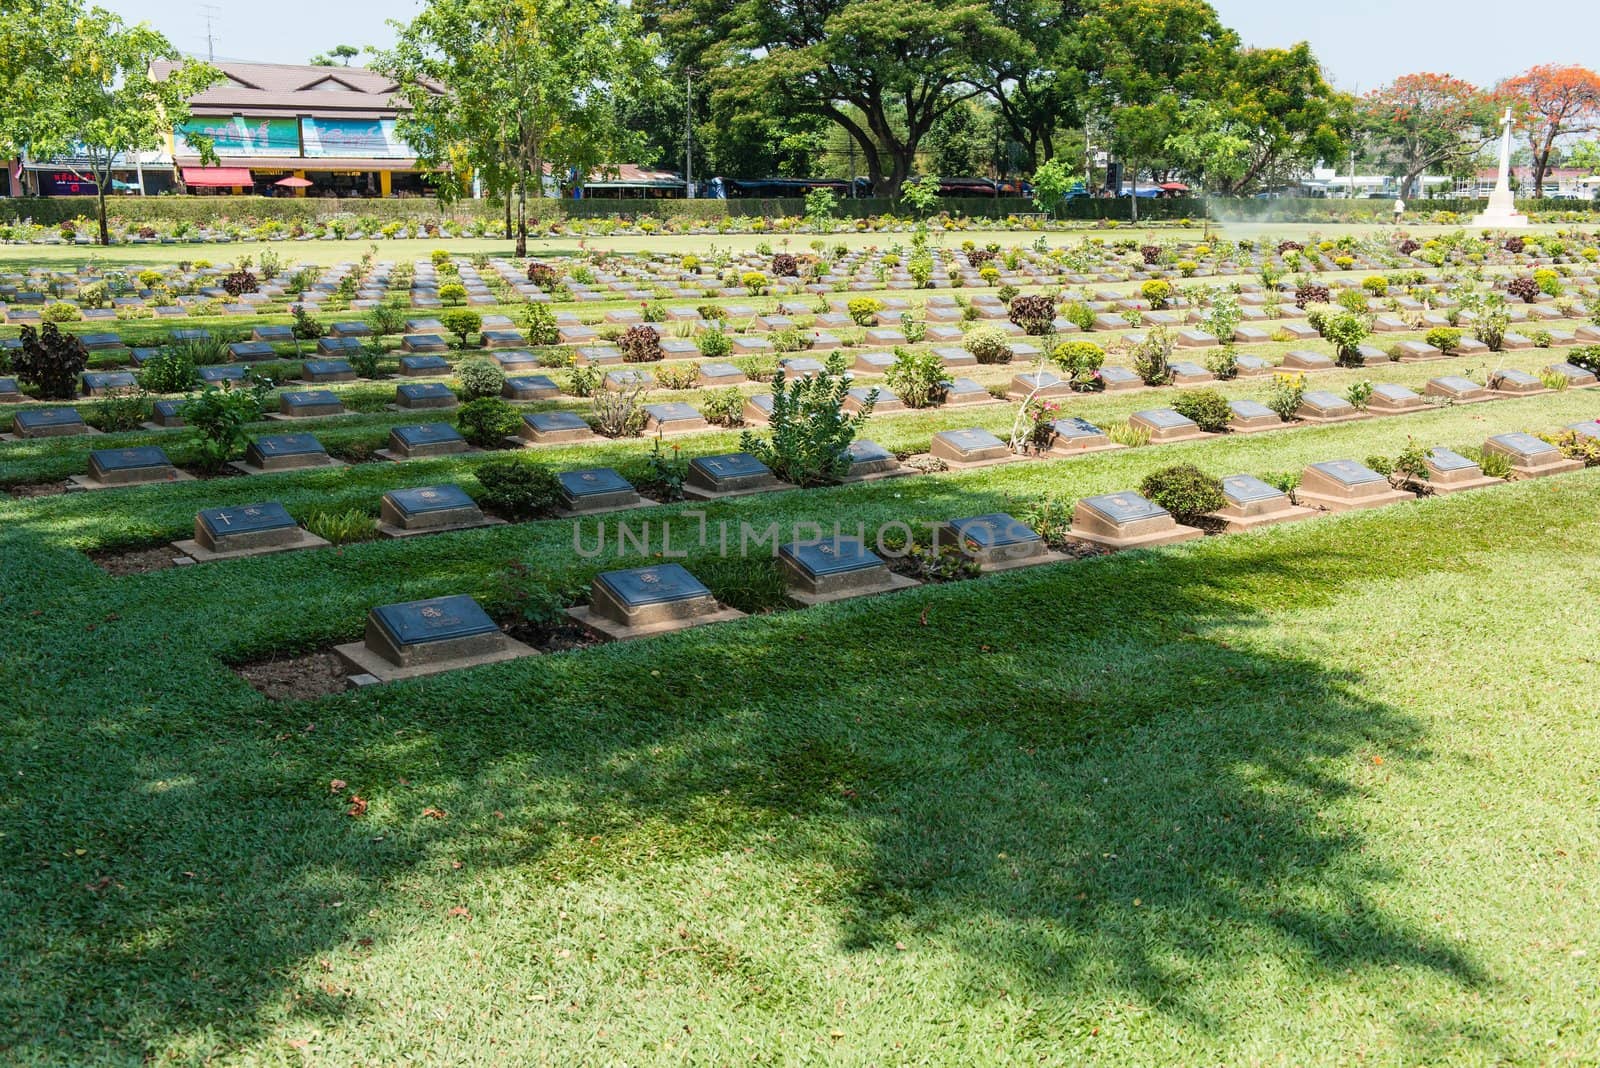 World war two soilder cemetary ground in Thailand by sasilsolutions